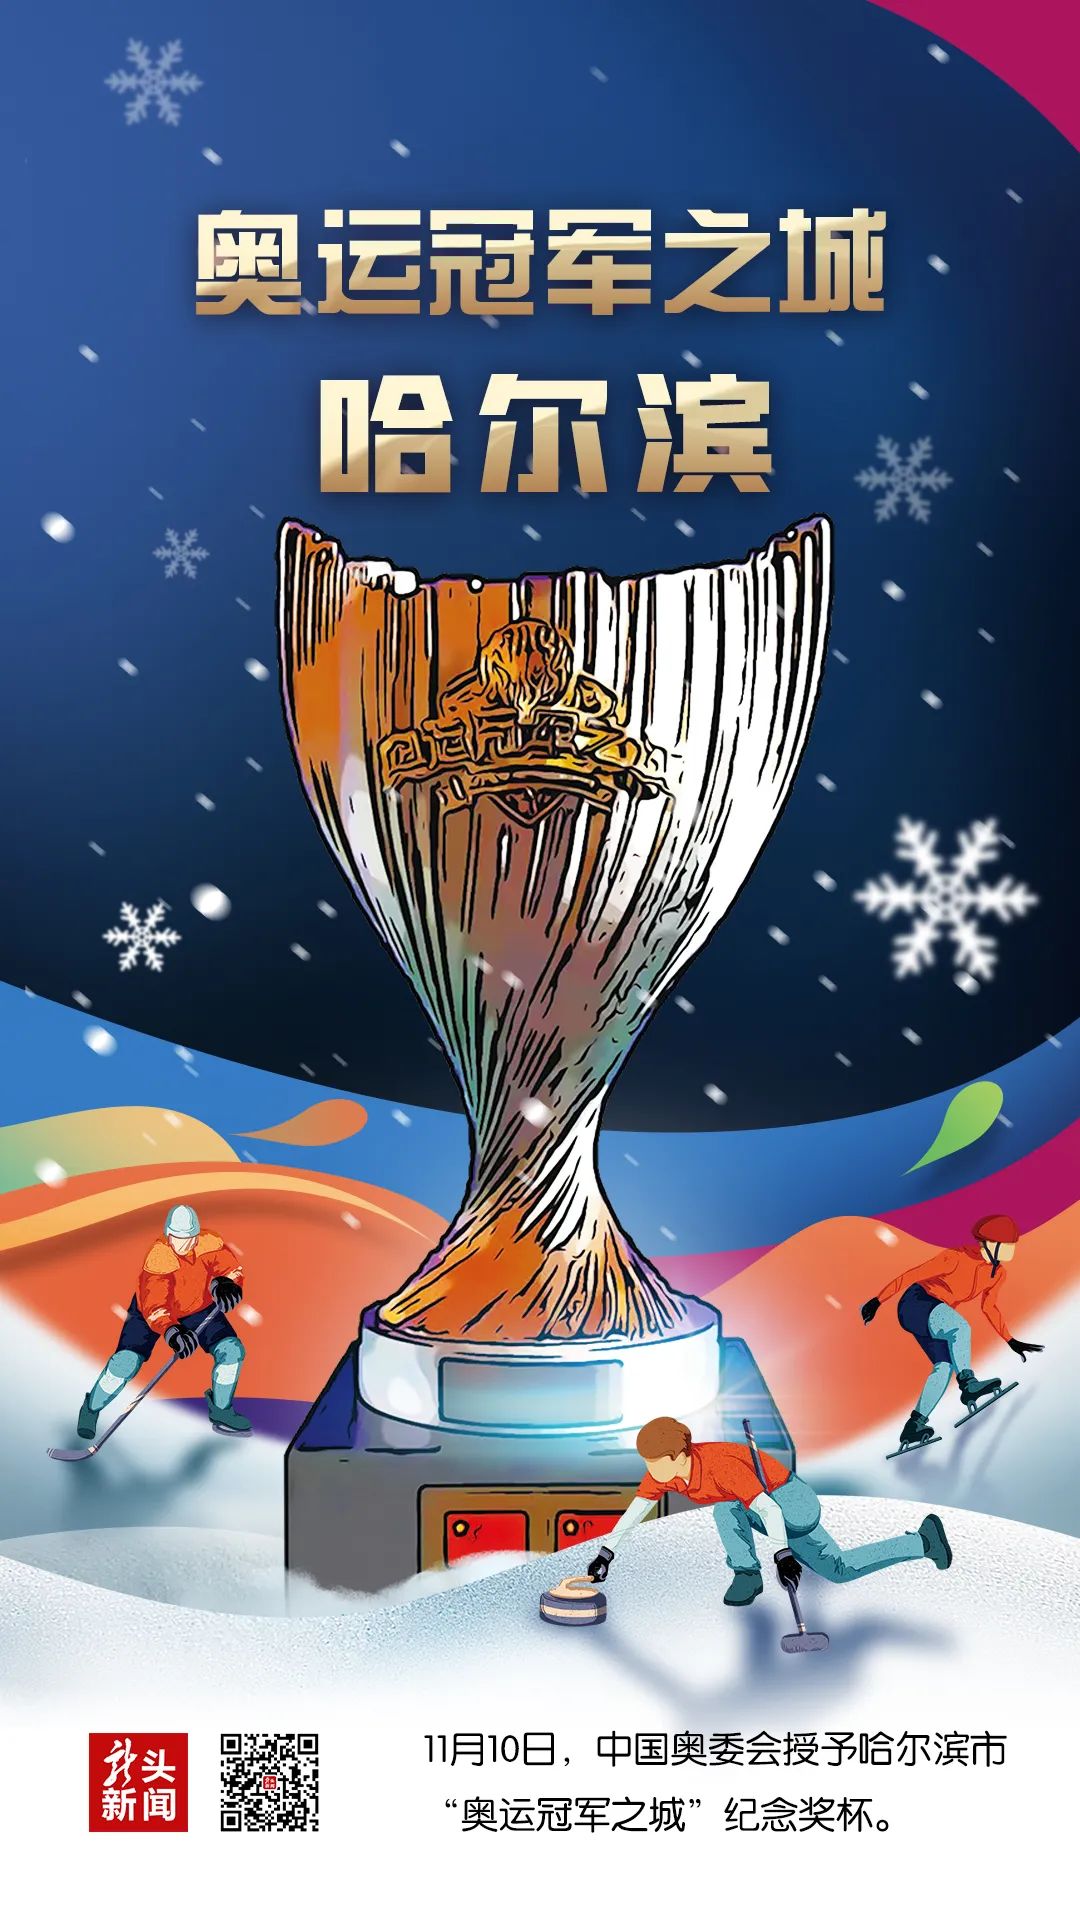 中国奥委会向哈尔滨市颁授奥运冠军之城奖杯